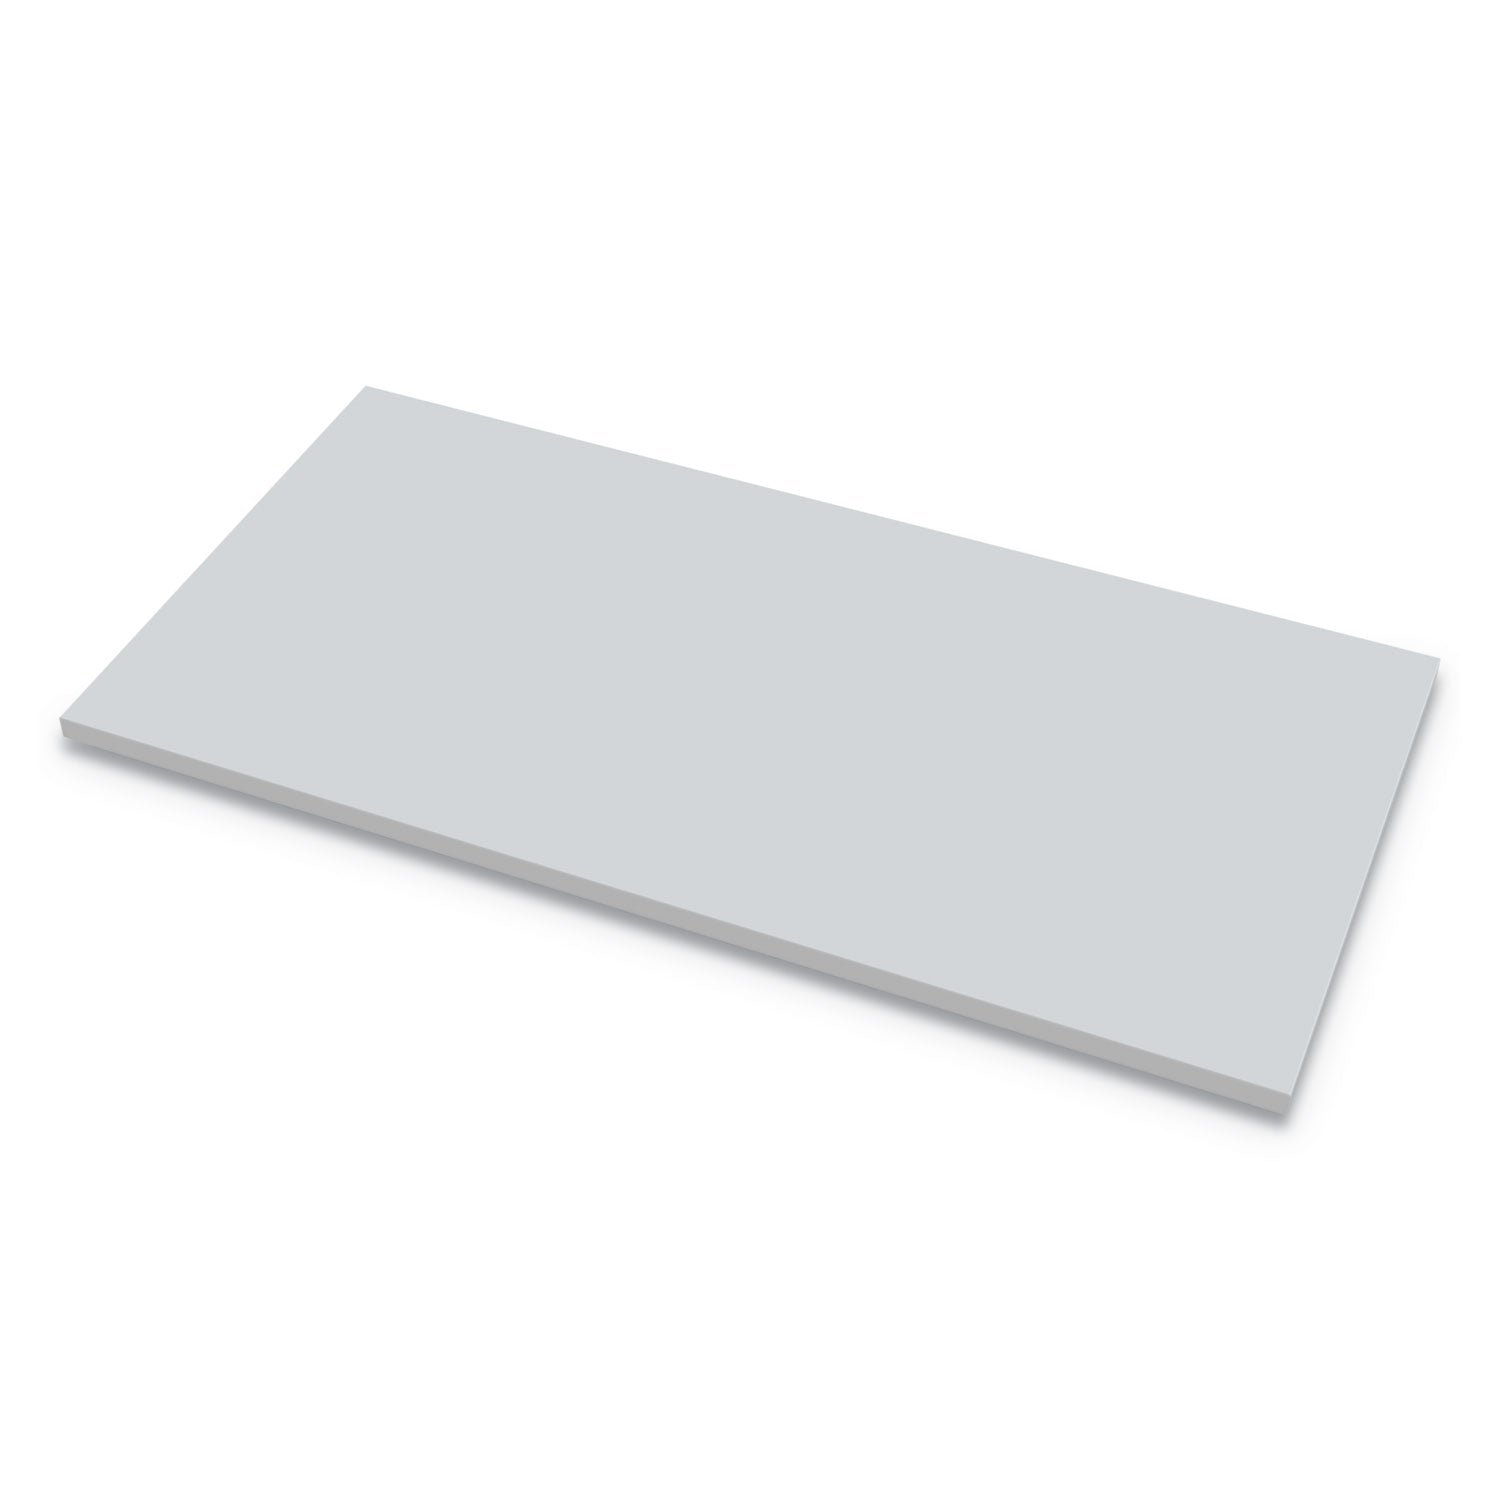 levado-laminate-table-top-72-x-30-gray_fel9649601 - 1